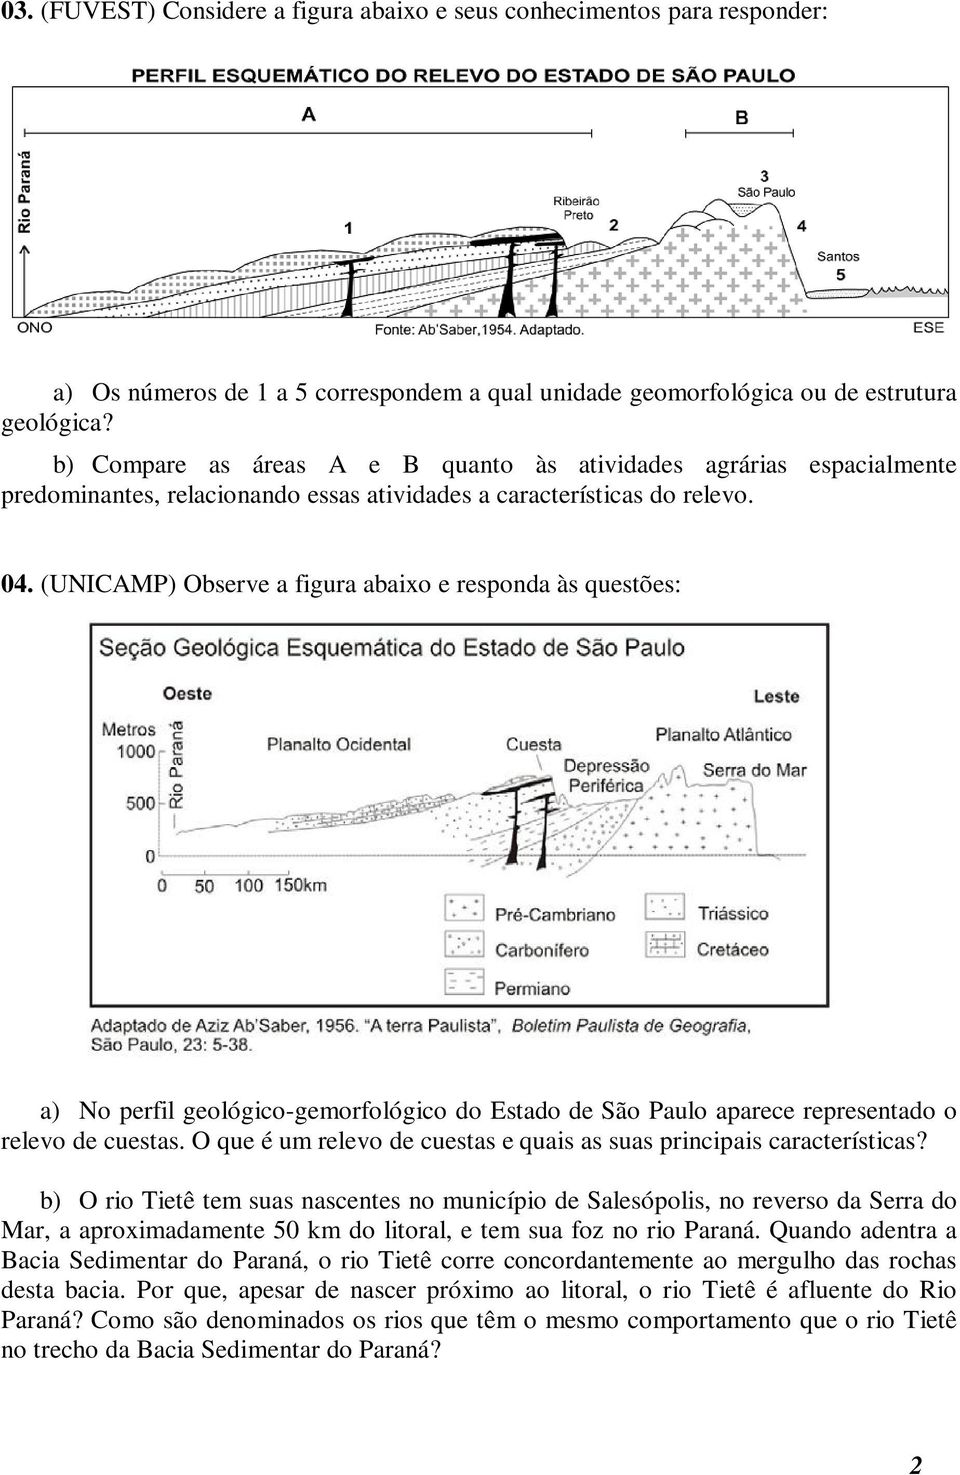 (UNICAMP) Observe a figura abaixo e responda às questões: a) No perfil geológico-gemorfológico do Estado de São Paulo aparece representado o relevo de cuestas.